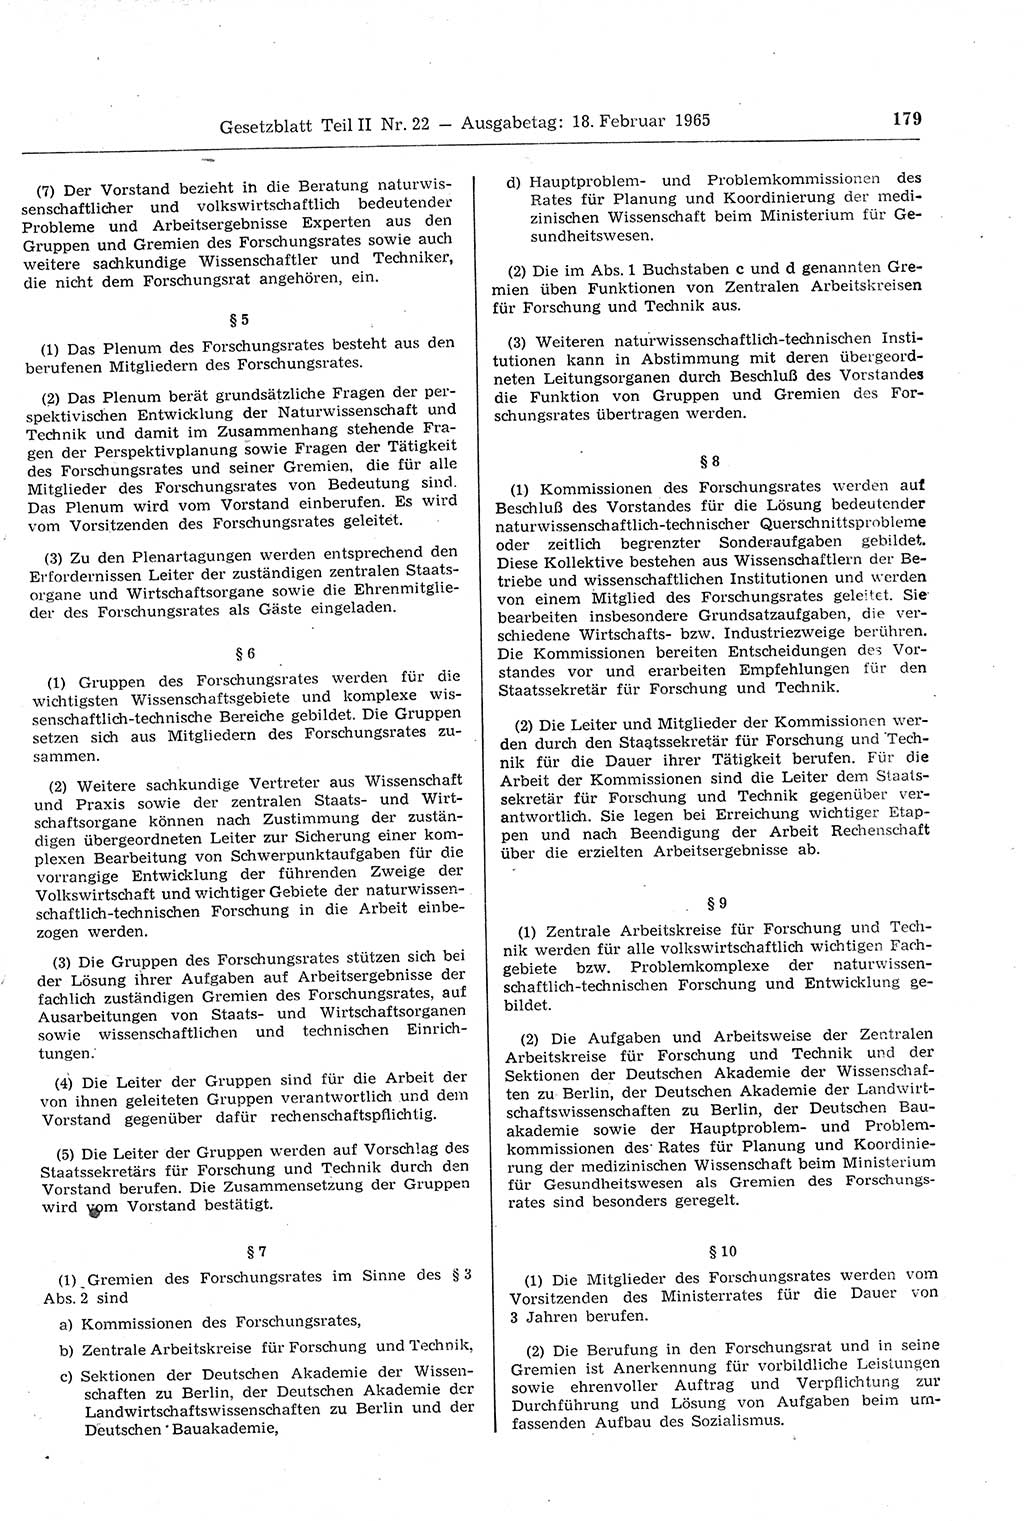 Gesetzblatt (GBl.) der Deutschen Demokratischen Republik (DDR) Teil ⅠⅠ 1965, Seite 179 (GBl. DDR ⅠⅠ 1965, S. 179)